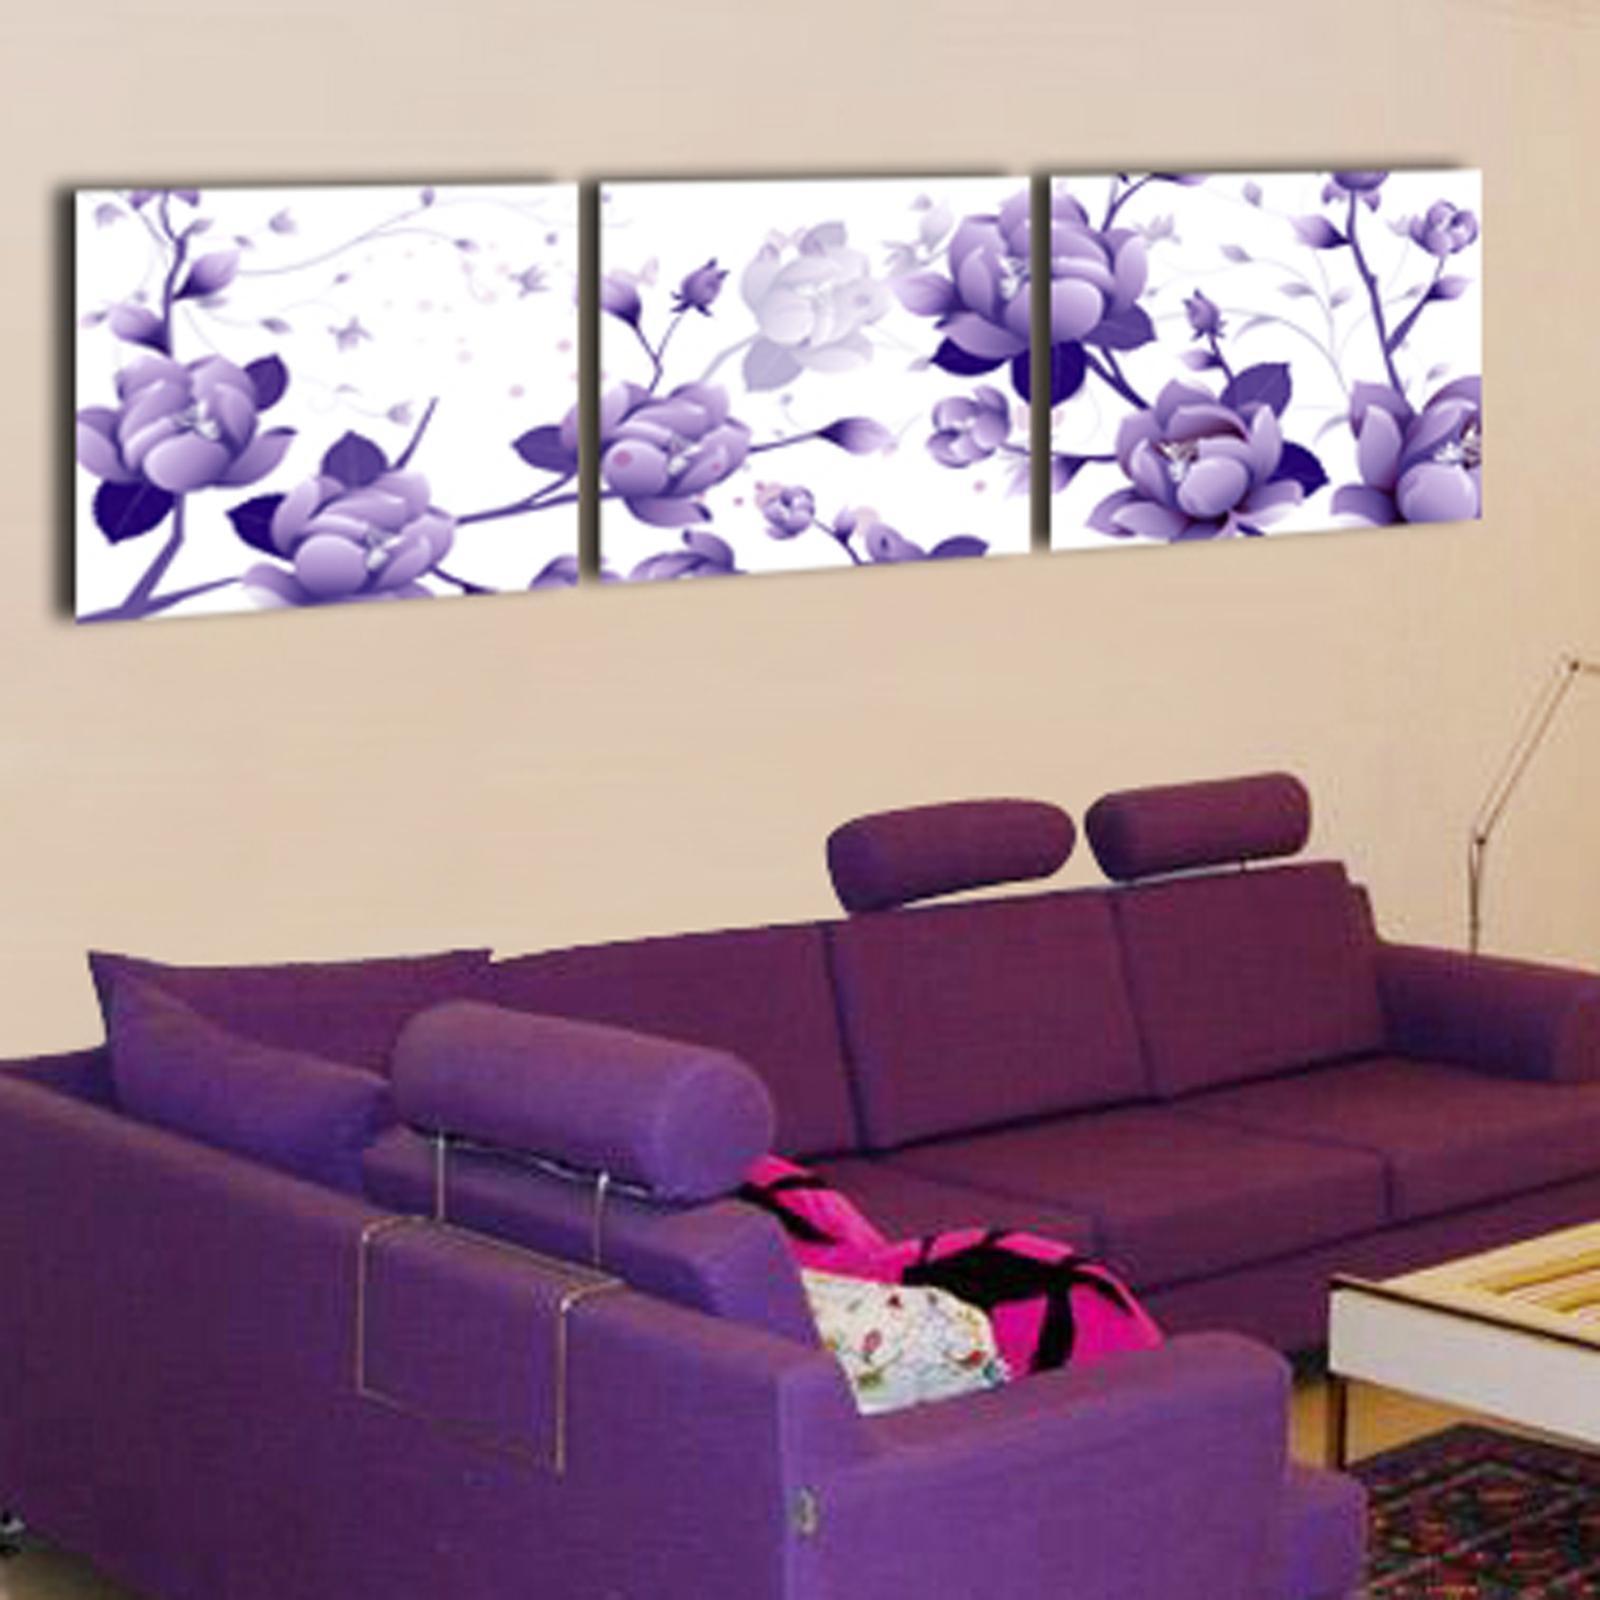 无框画 三联 客厅 卧室挂画 影视墙 背景壁画 油画 花卉 欧式 紫